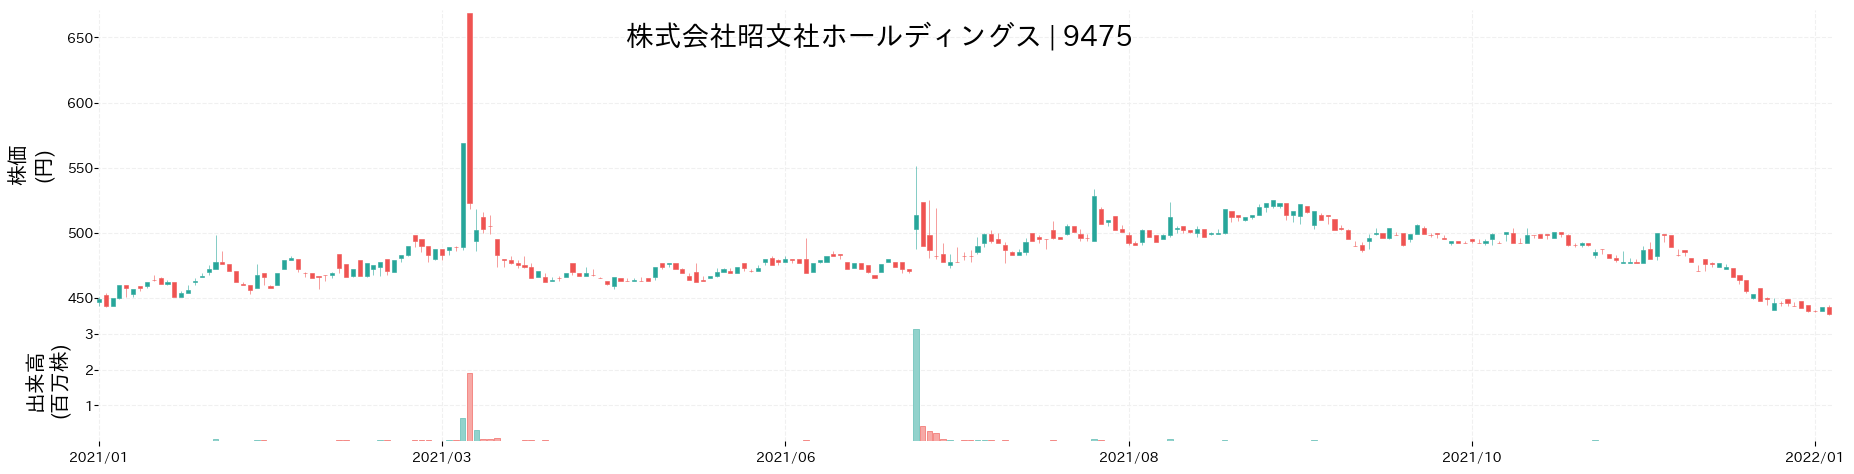 昭文社ホールディングスの株価推移(2021)